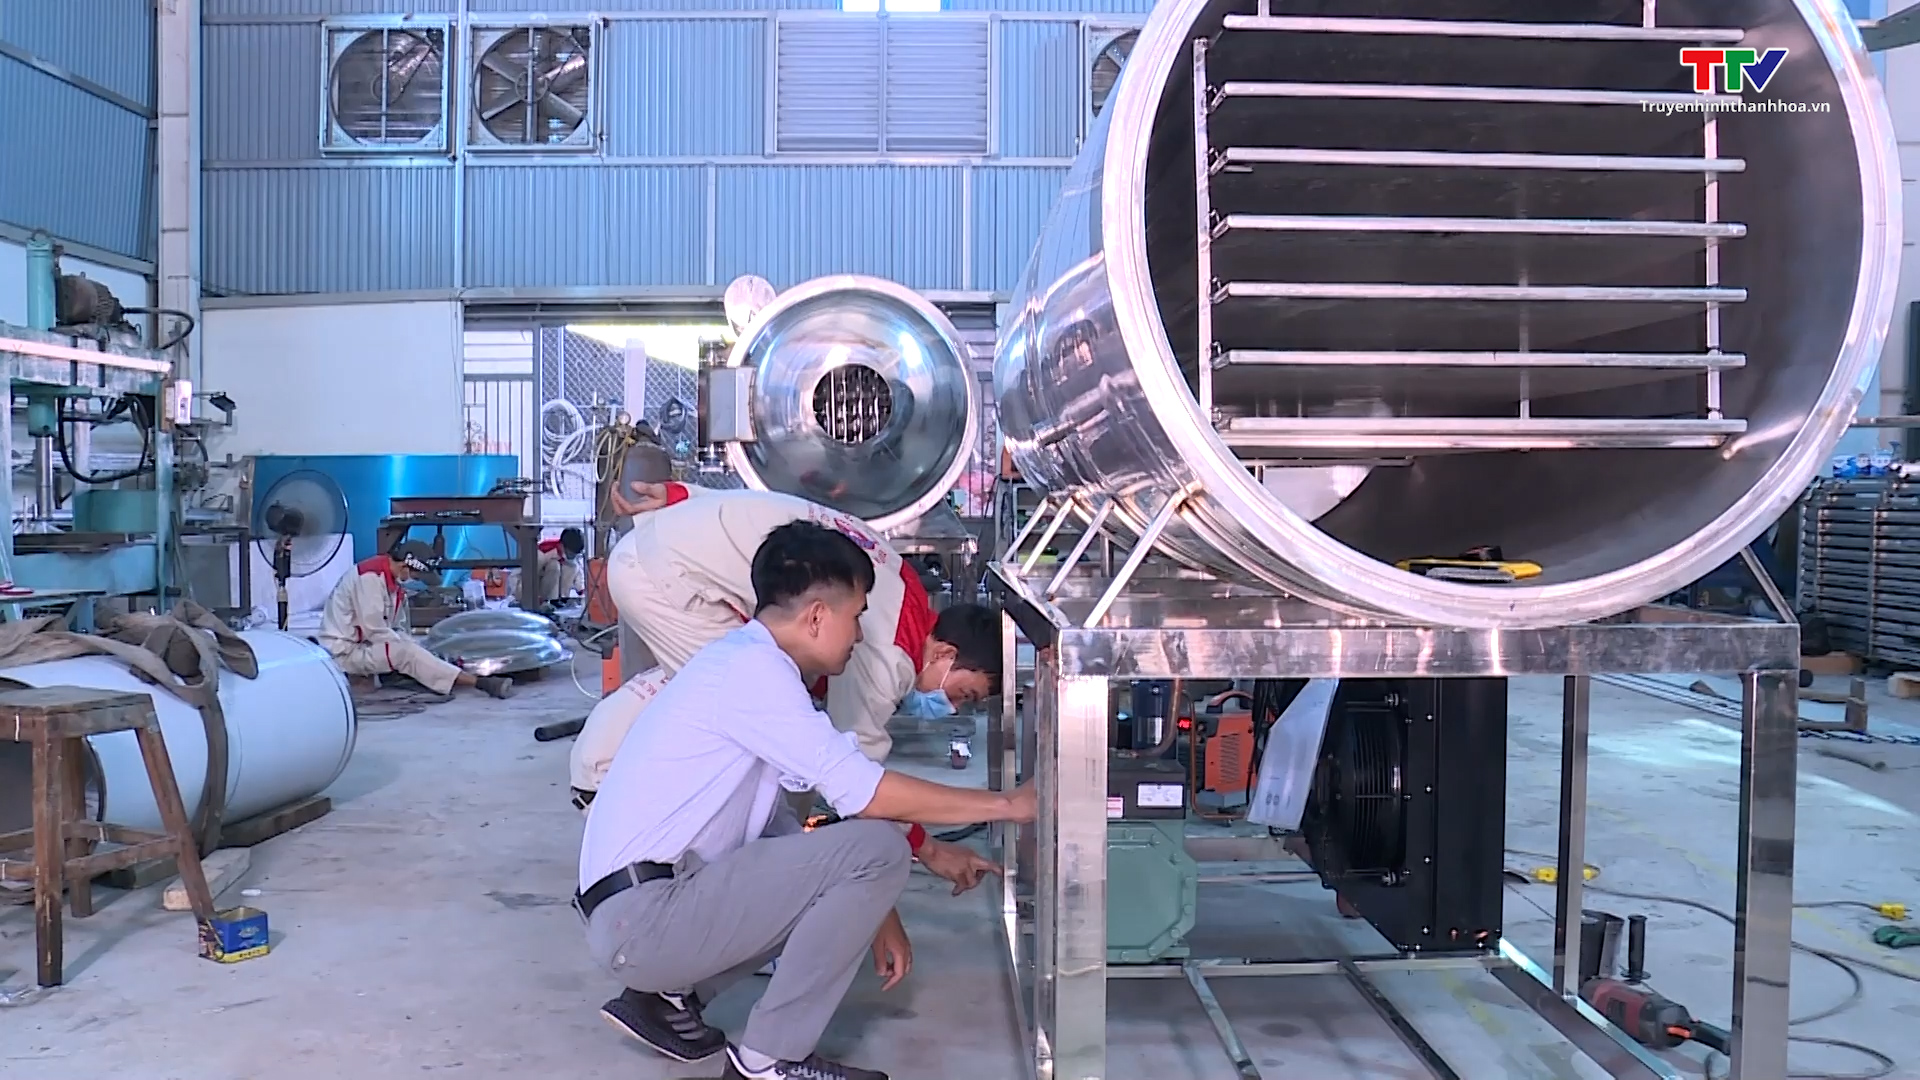 Kỹ sư trẻ xứ Thanh chế tạo thành công máy sấy thăng hoa công suất lớn - Ảnh 4.